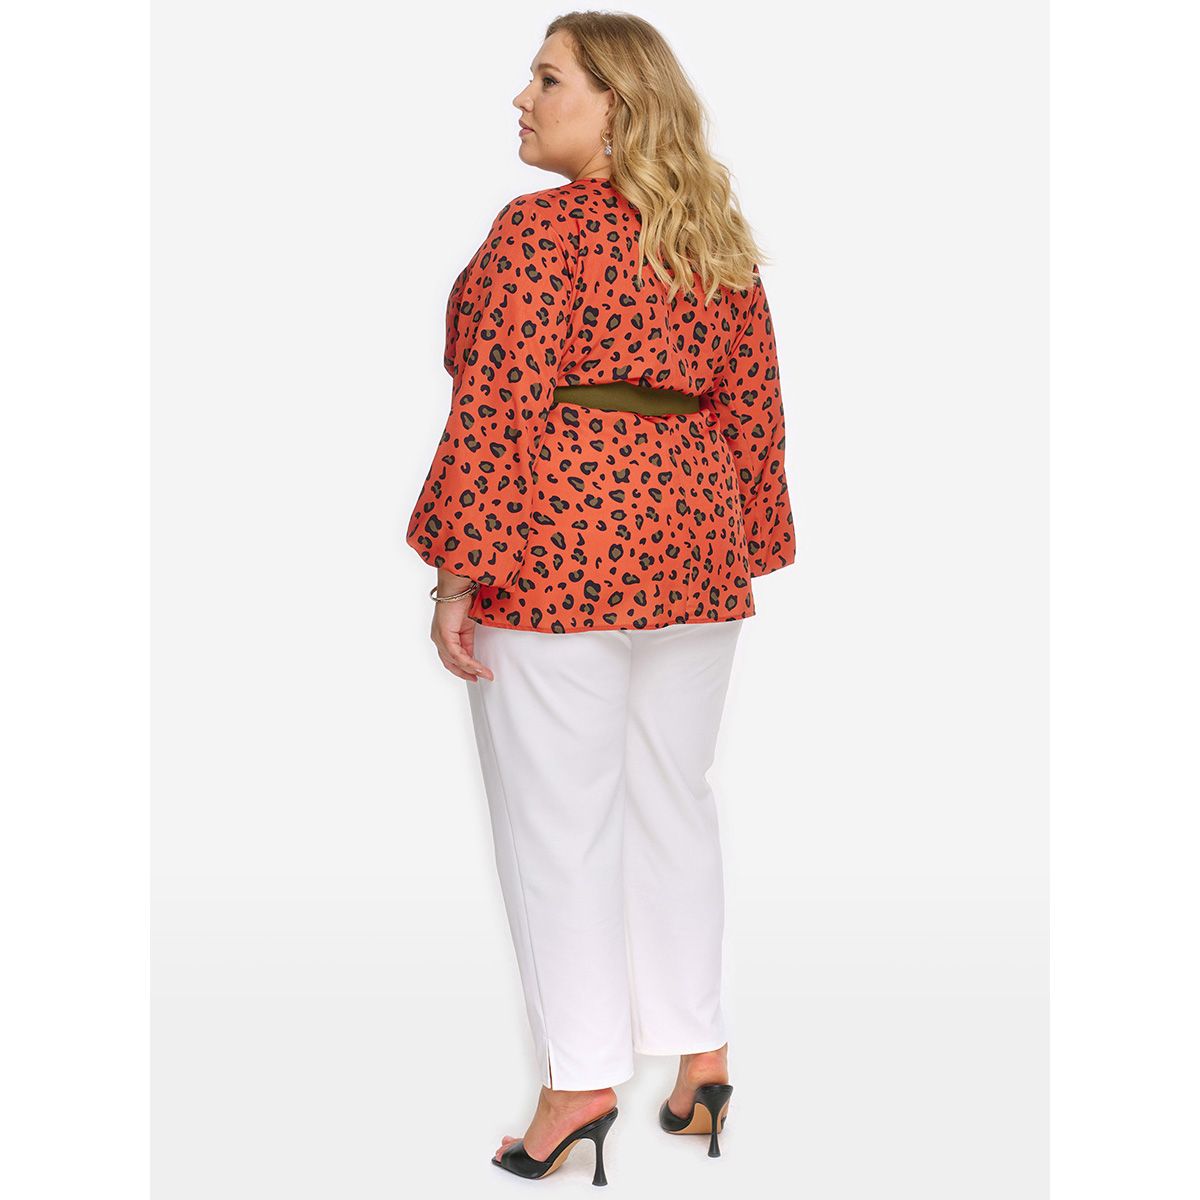 Блуза с широкими рукавами, принт "терракотовый леопард"